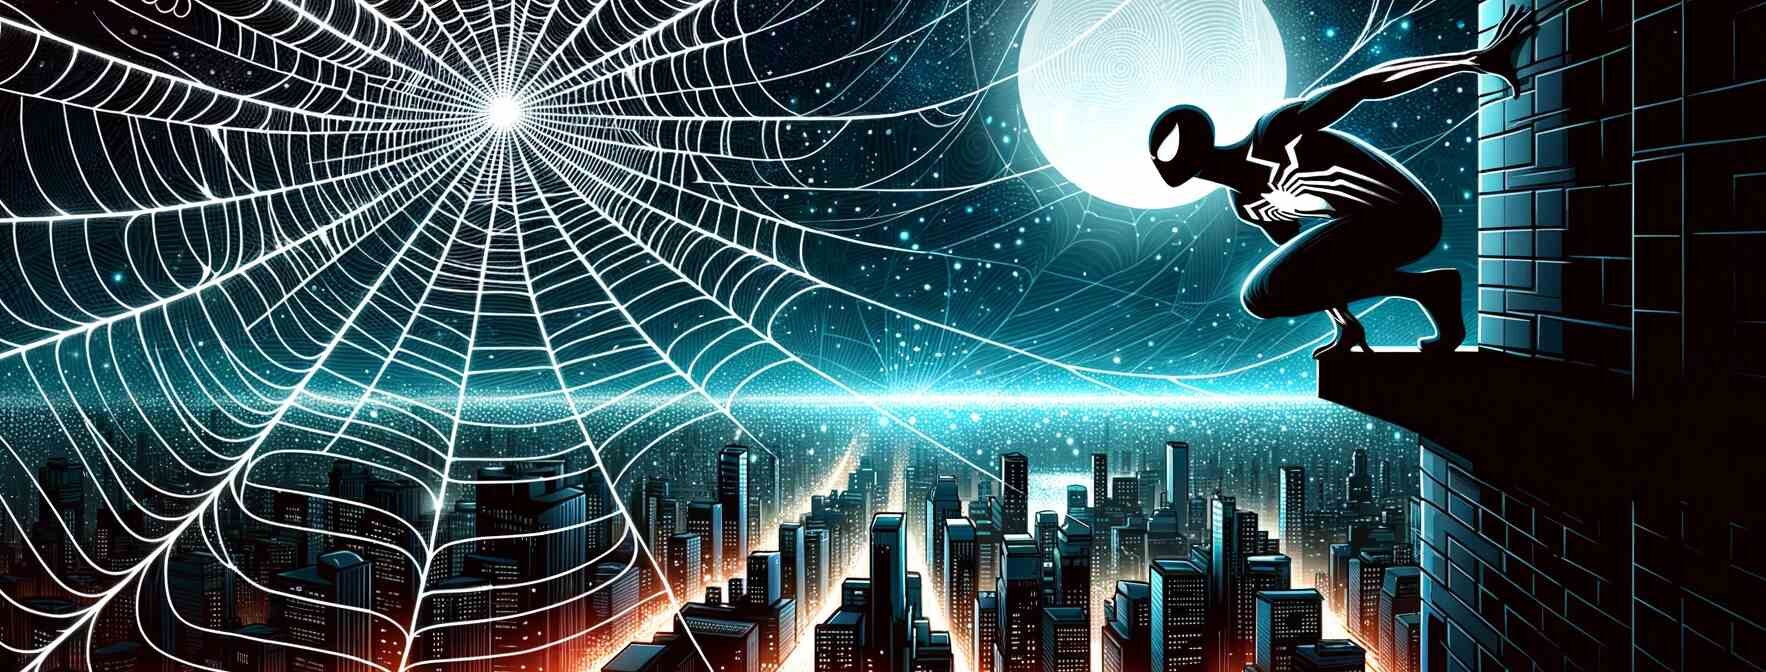 Die Spinne - Spider-Man